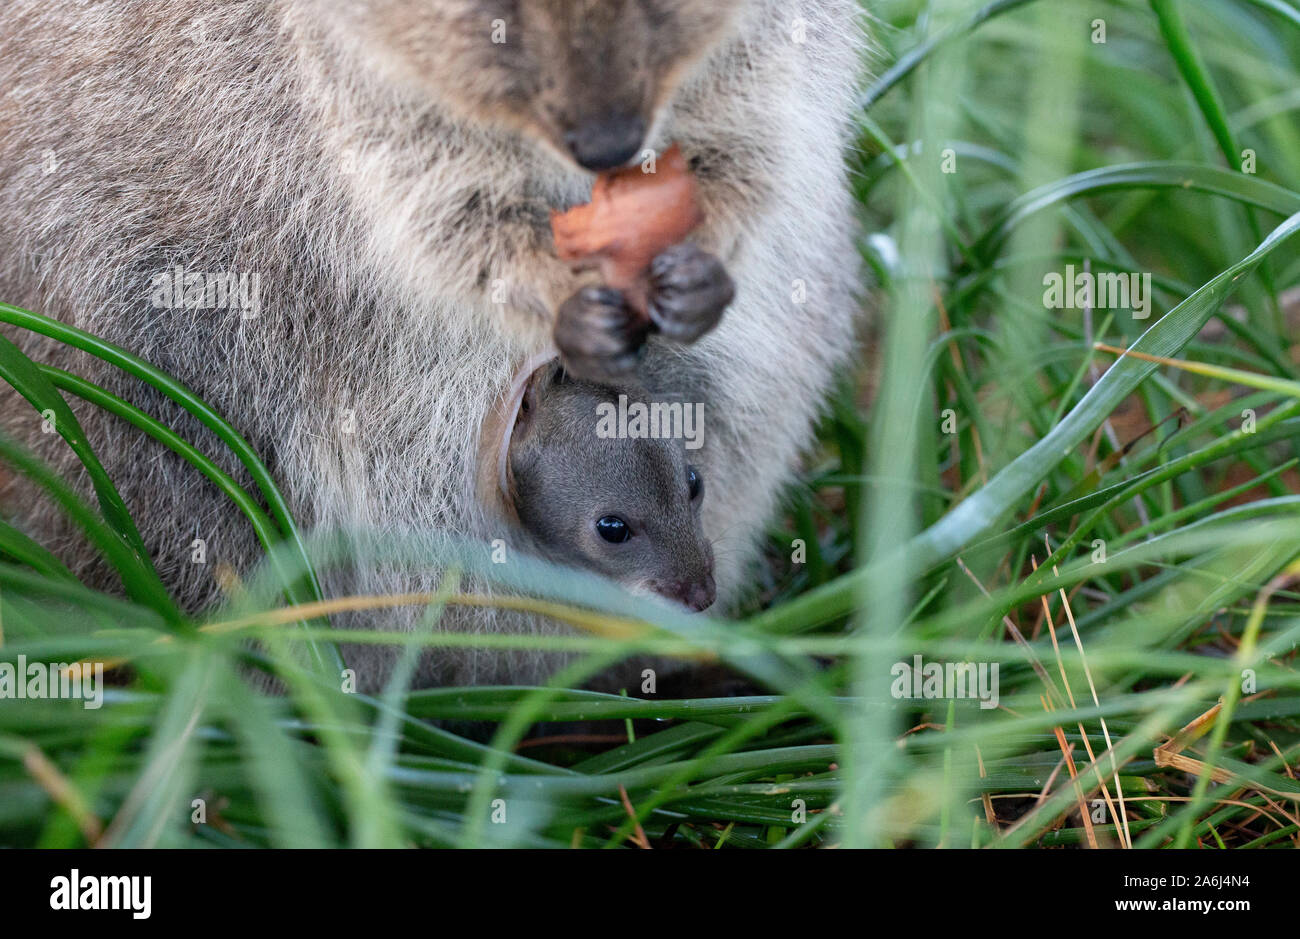 Baby Quokka (Setonix brachyurus) joey in mother's pouch, Rottnest Island, Western Australia Stock Photo